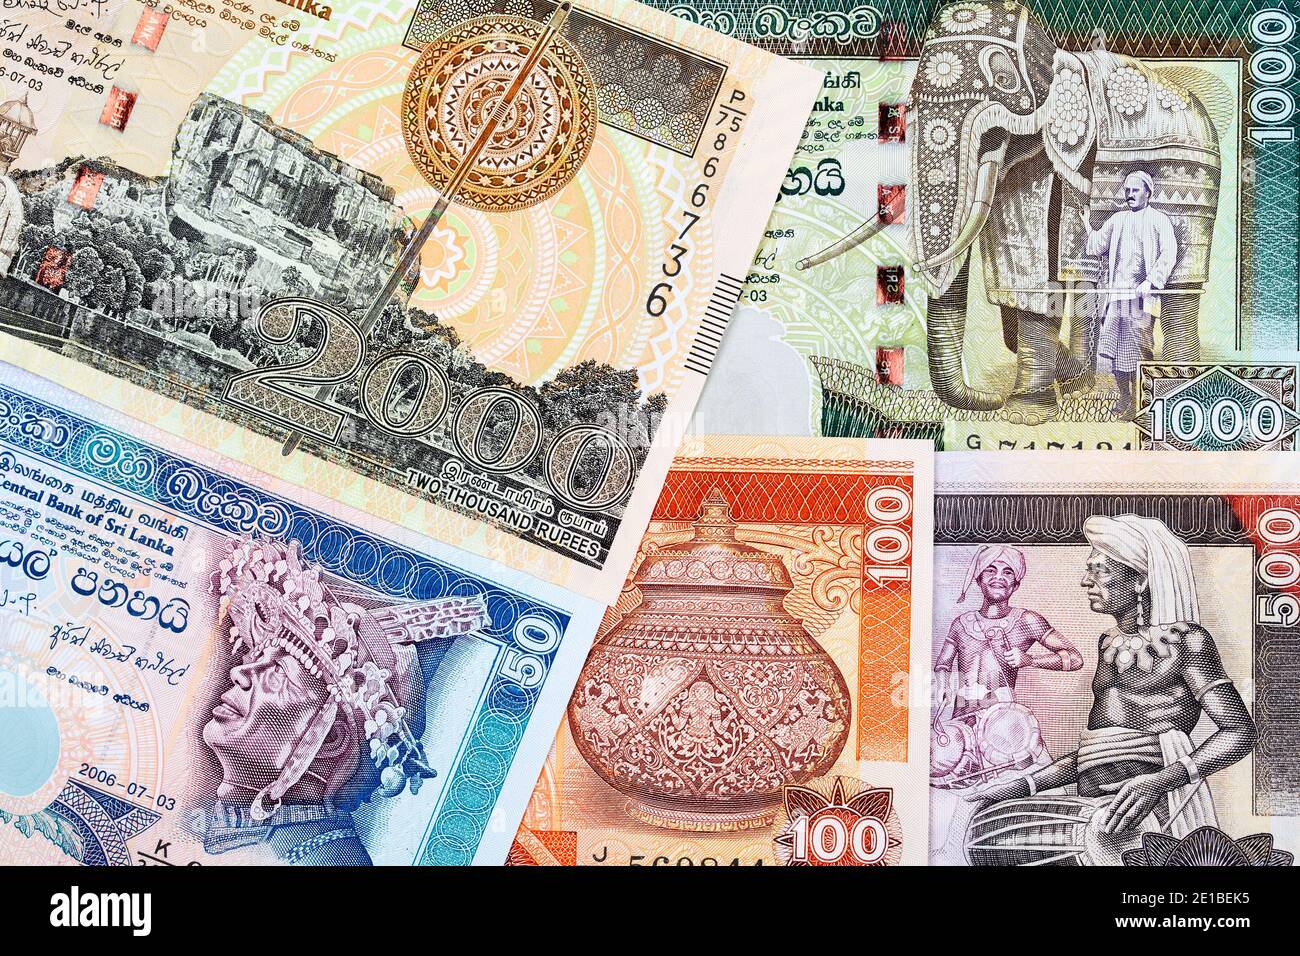 Old Sri Lankan money - Rupee Stock Photo